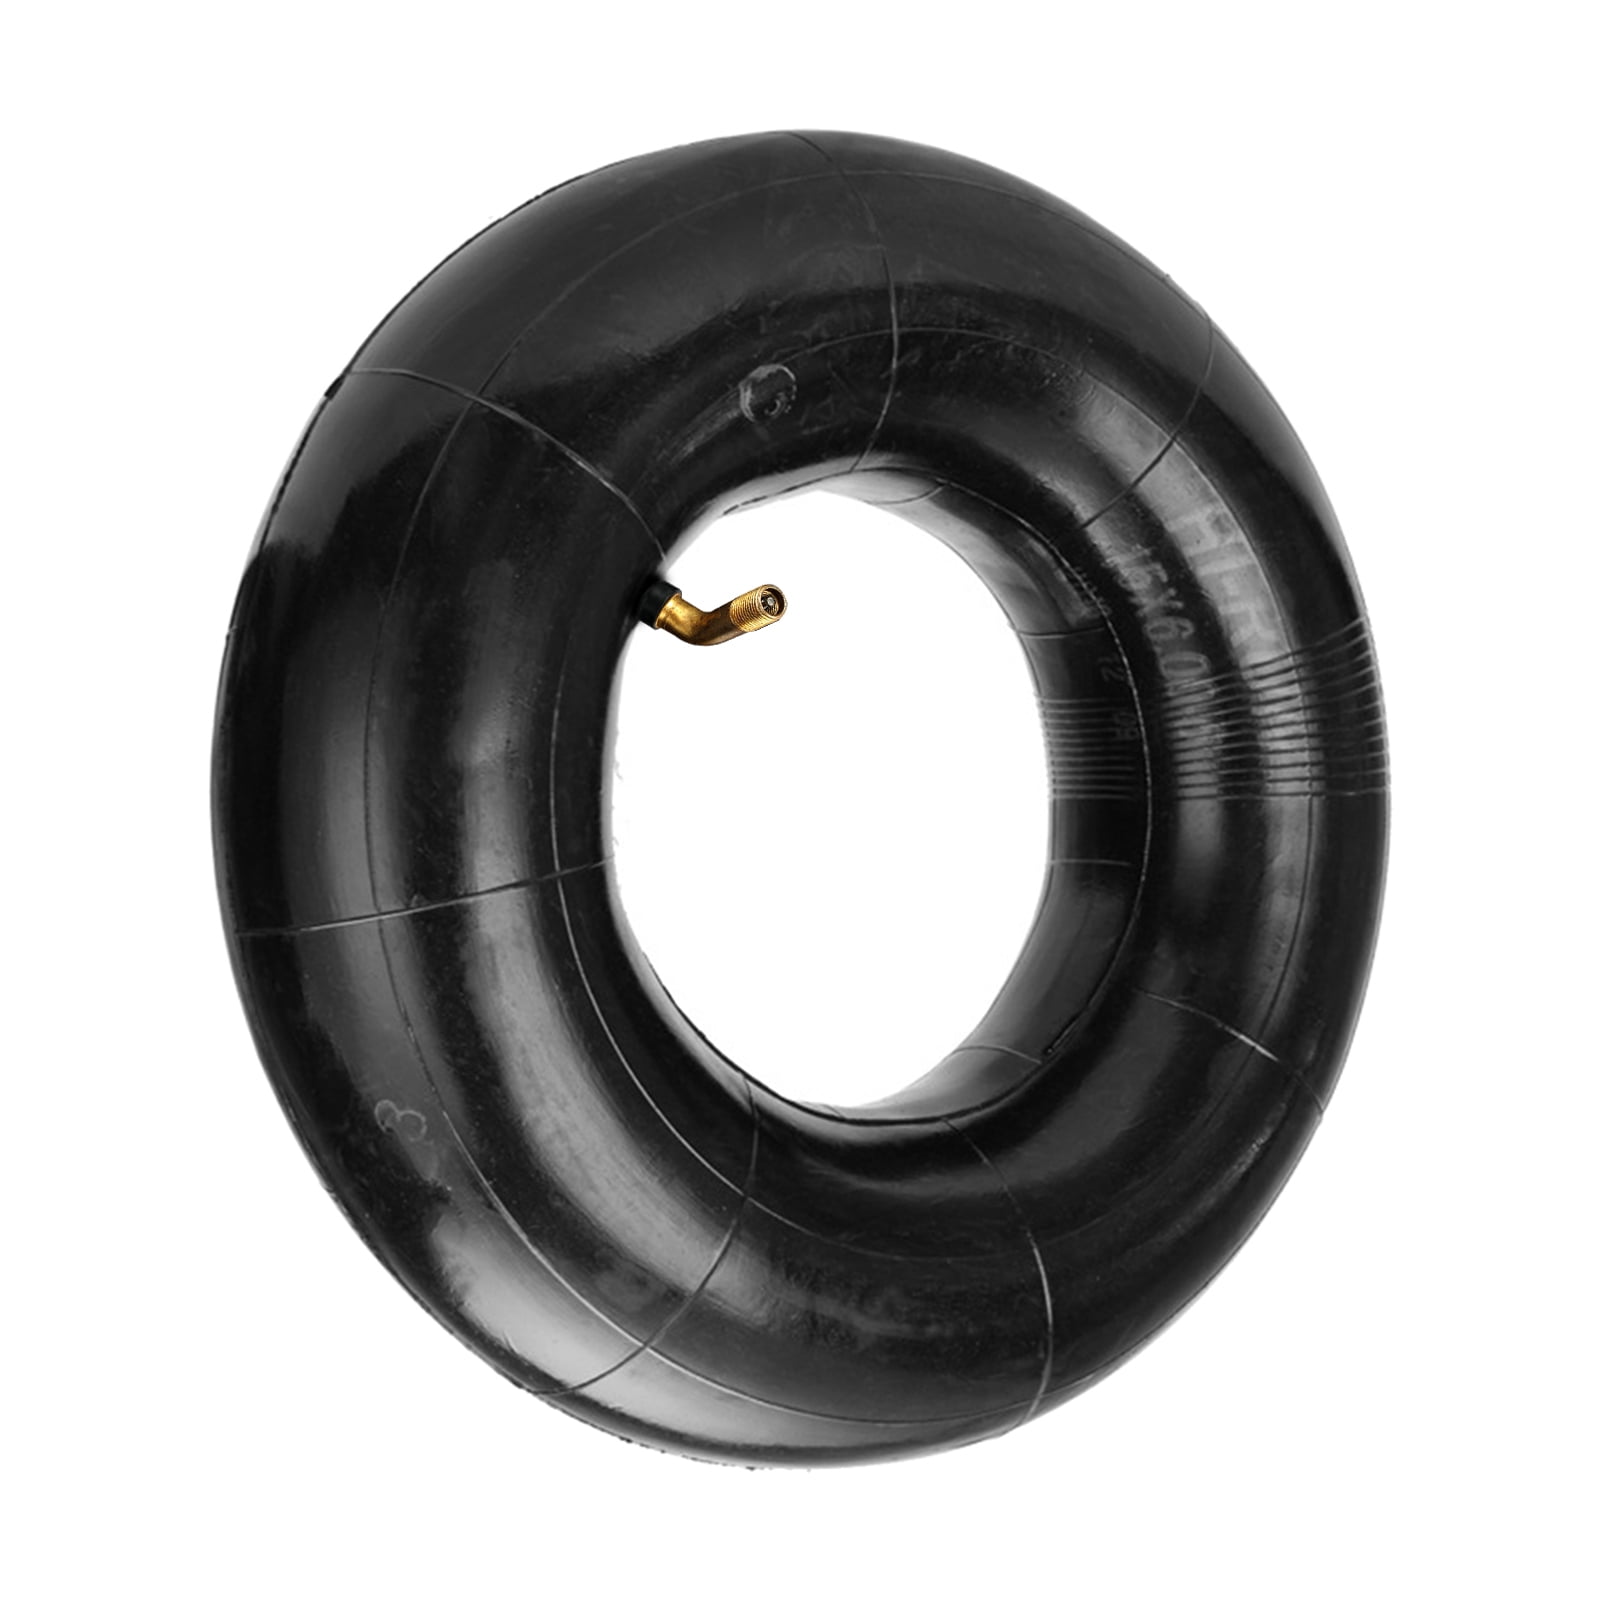 12 NEW 15x6.00-6 Lawn Mower Tire Inner Tubes 